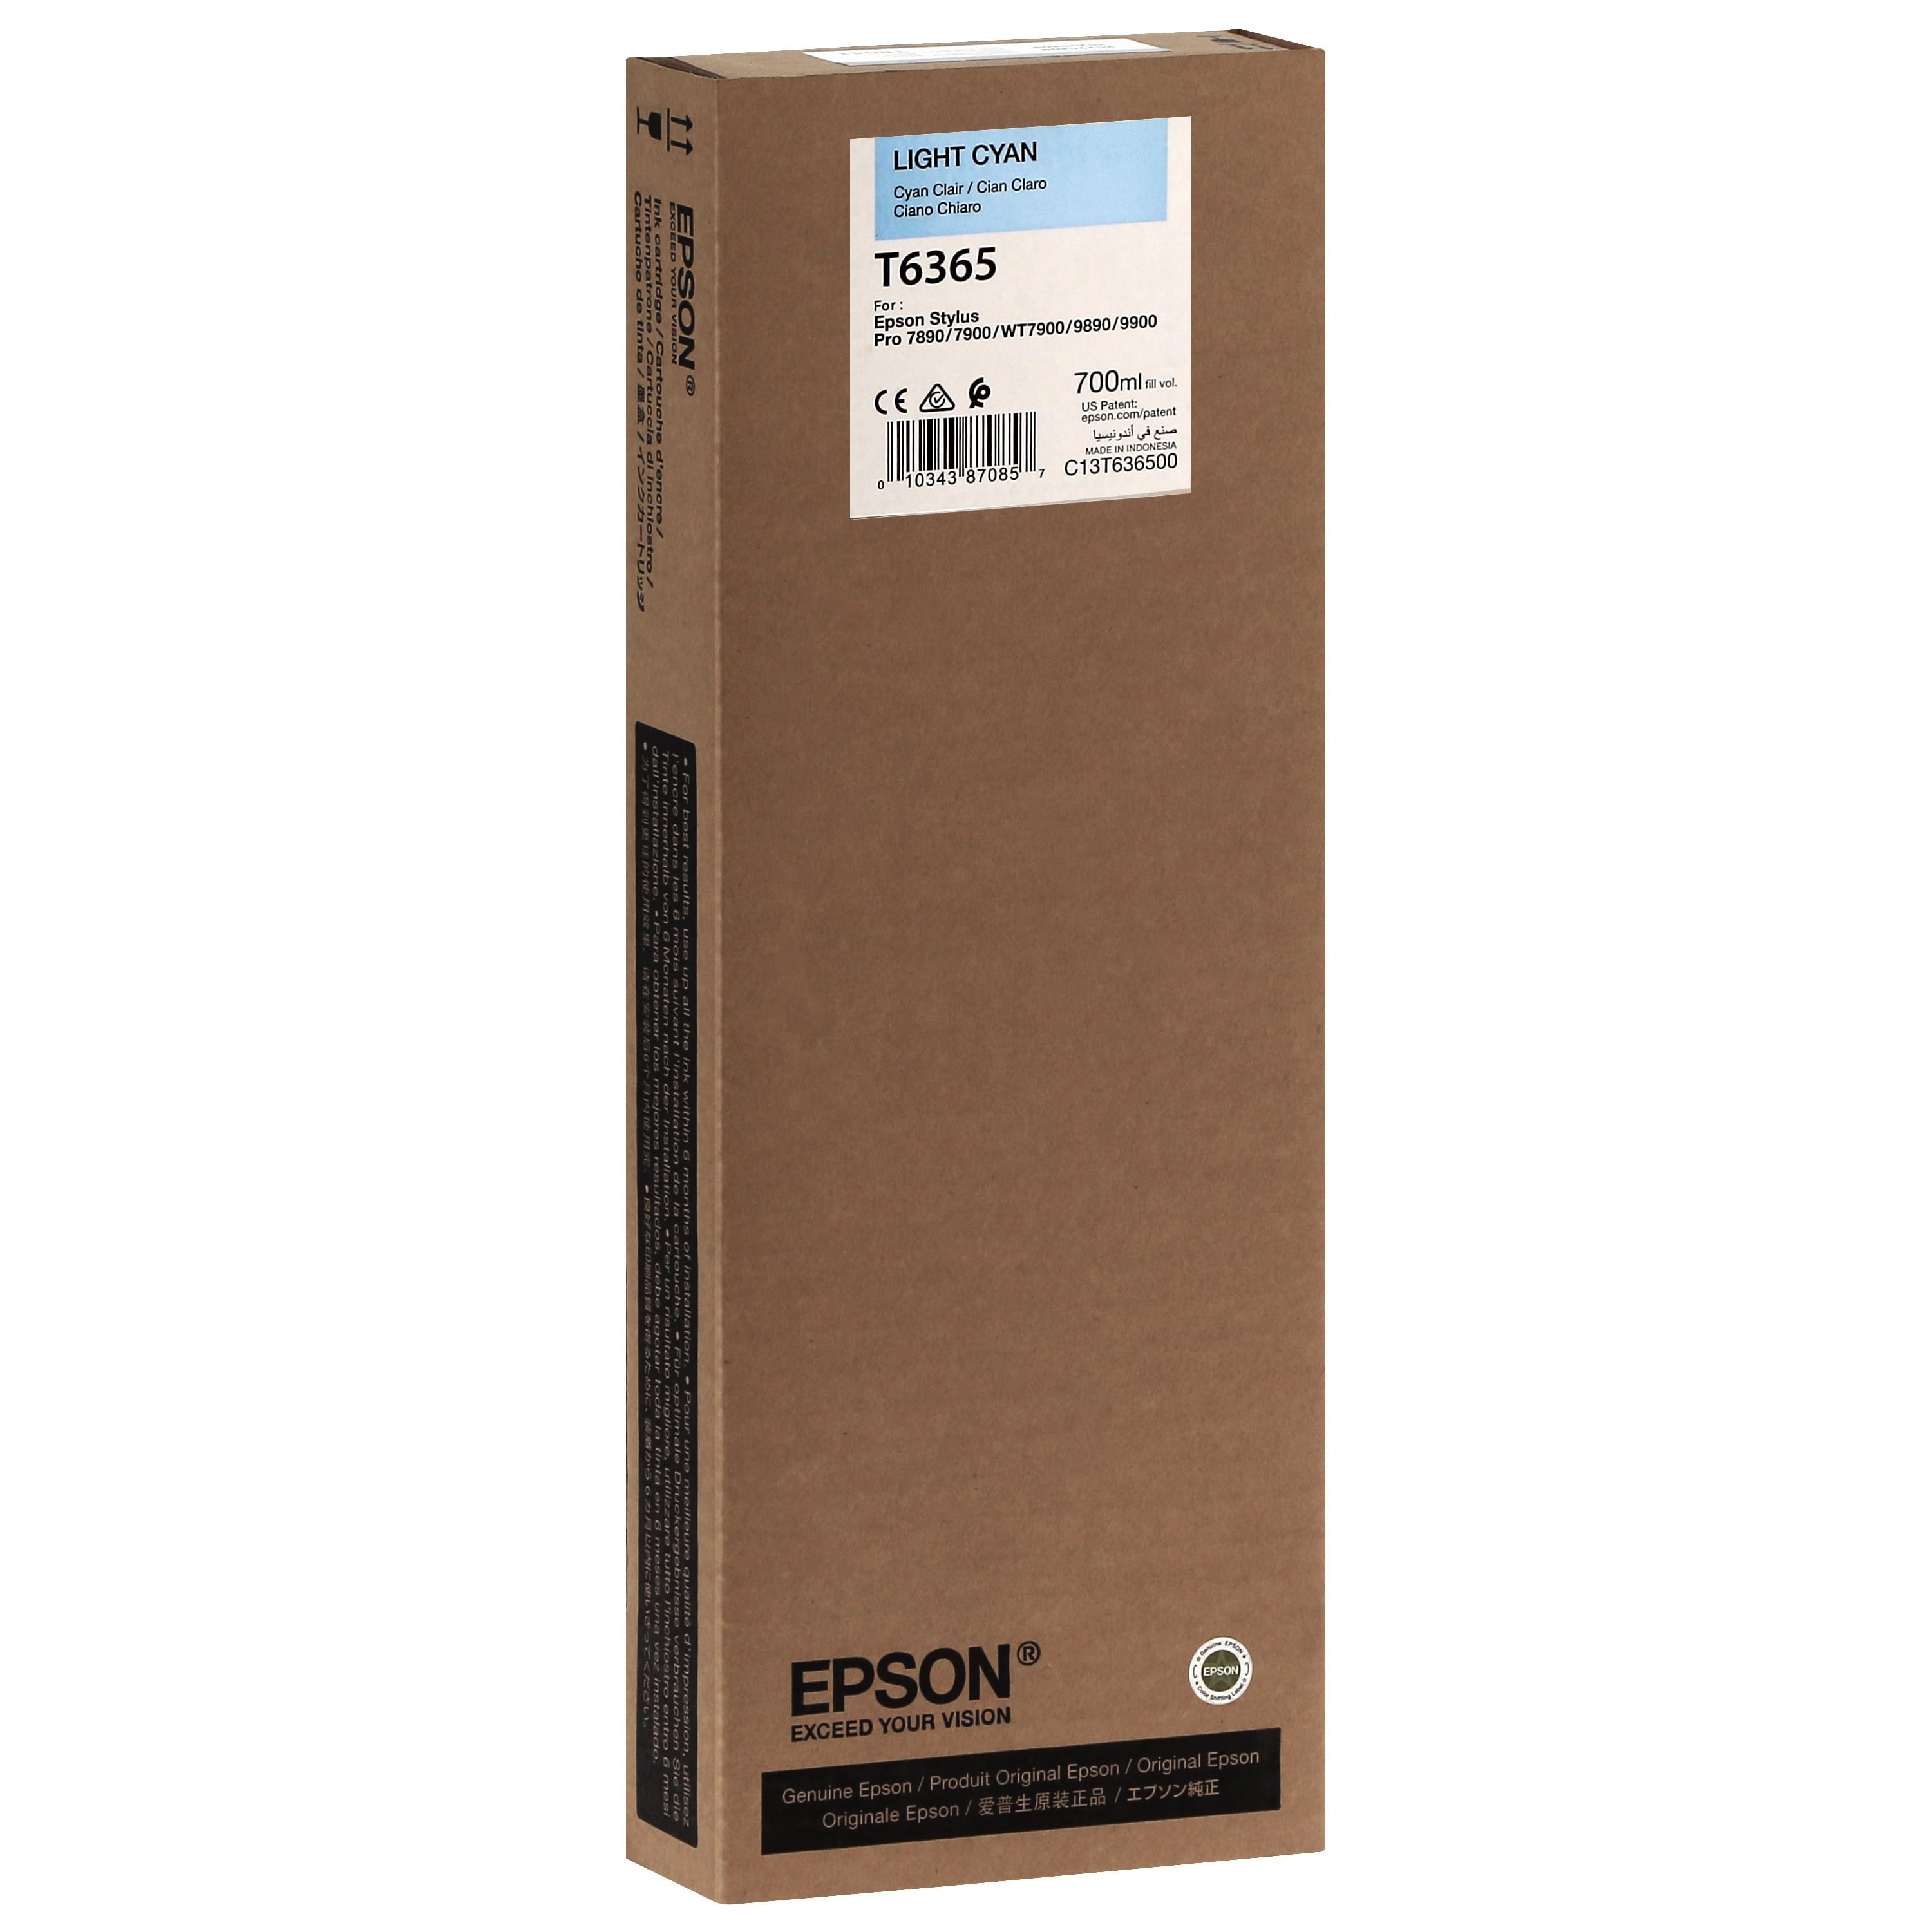 EPSON - Cartouche d'encre traceur T6365 Pour imprimante 7890/9890/7900/9900 Cyan clair - 700ml